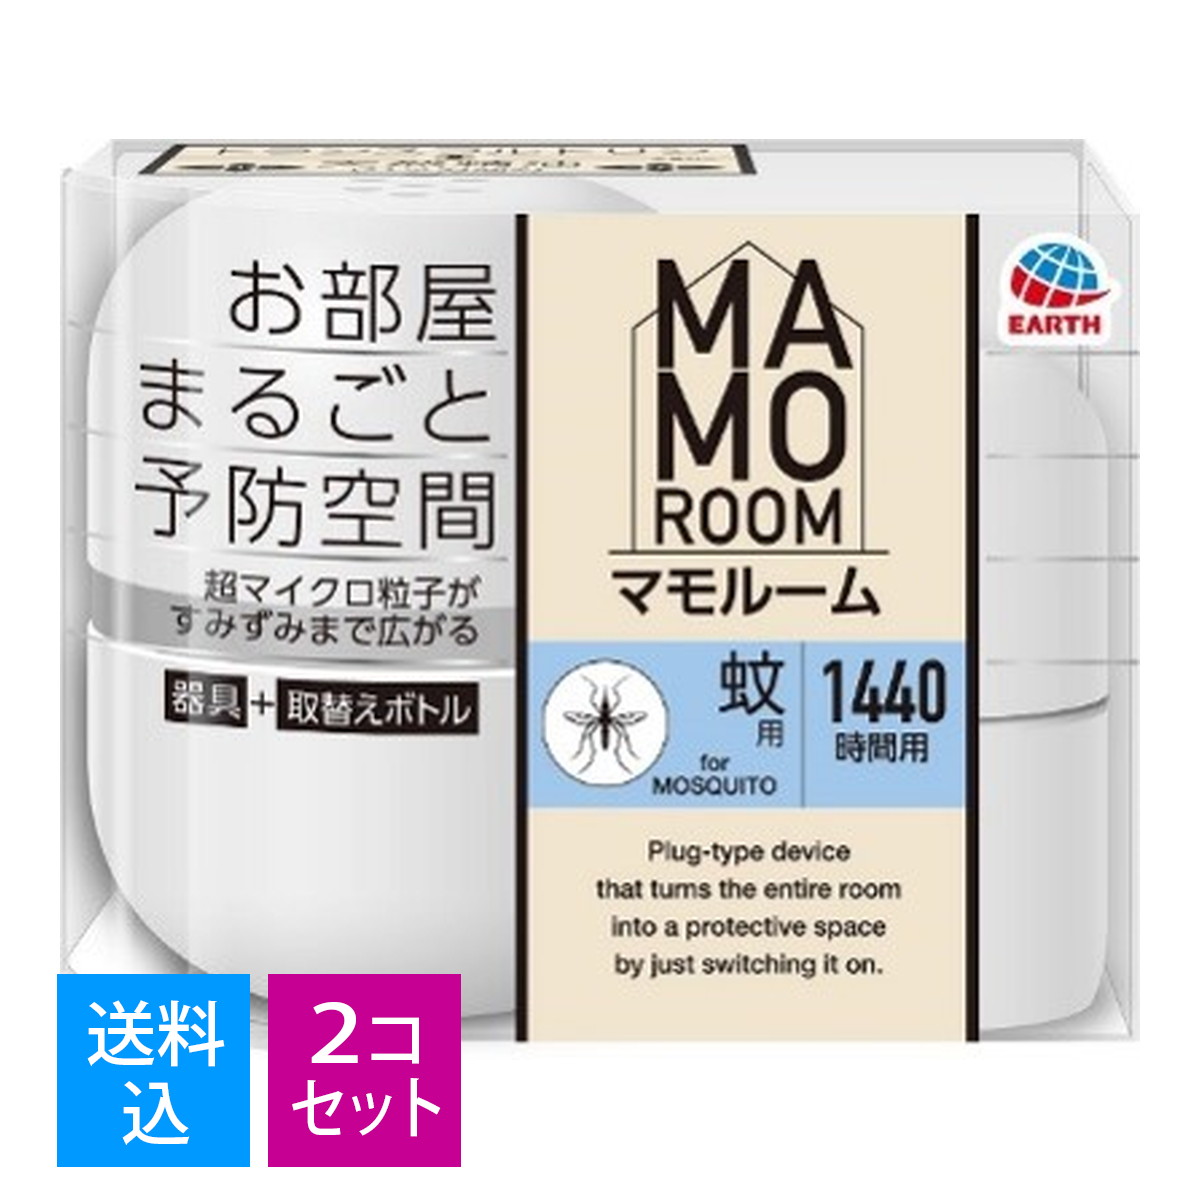 【楽天市場】アース製薬 マモルーム ダニ用 1440時間用 器具+詰替え